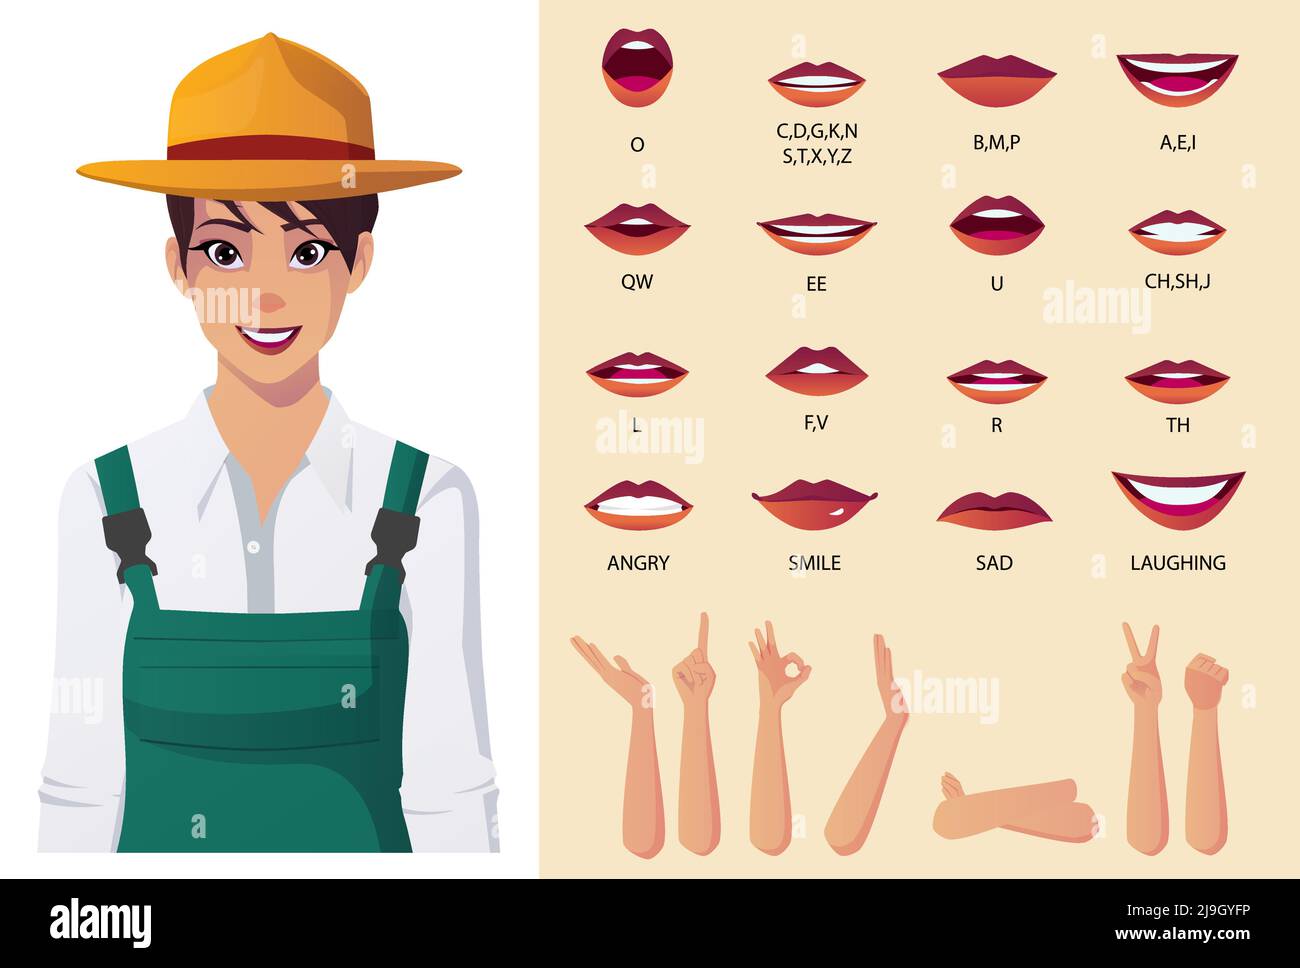 Personaje femenino campesino con sincronización de labios, animación facial, emociones y algunos gestos de manos Ilustración del Vector